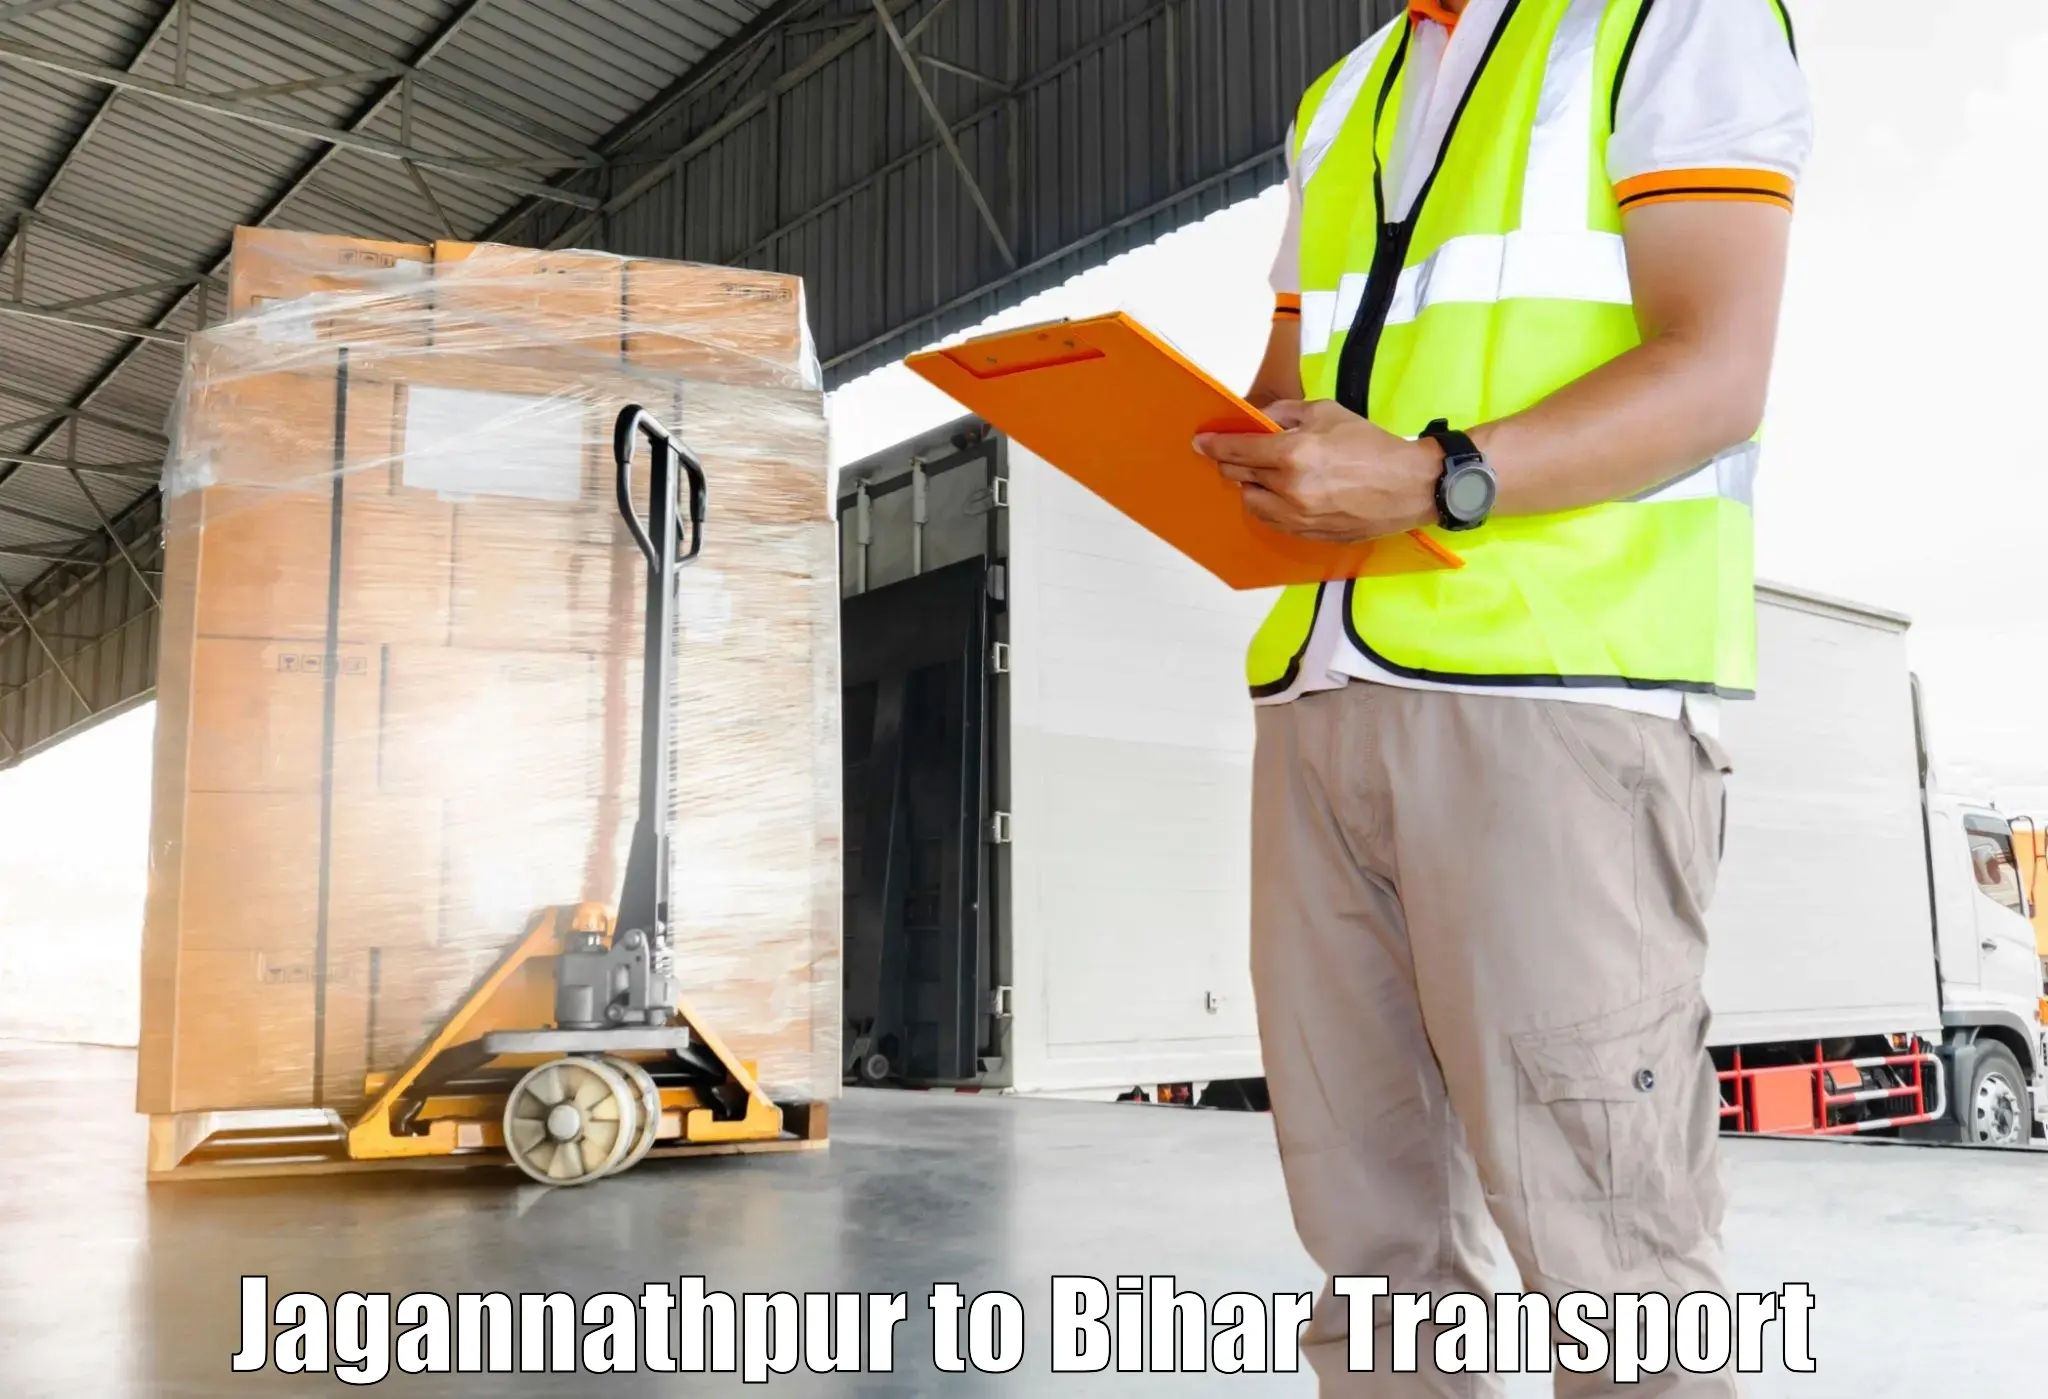 Interstate transport services Jagannathpur to Gauripur